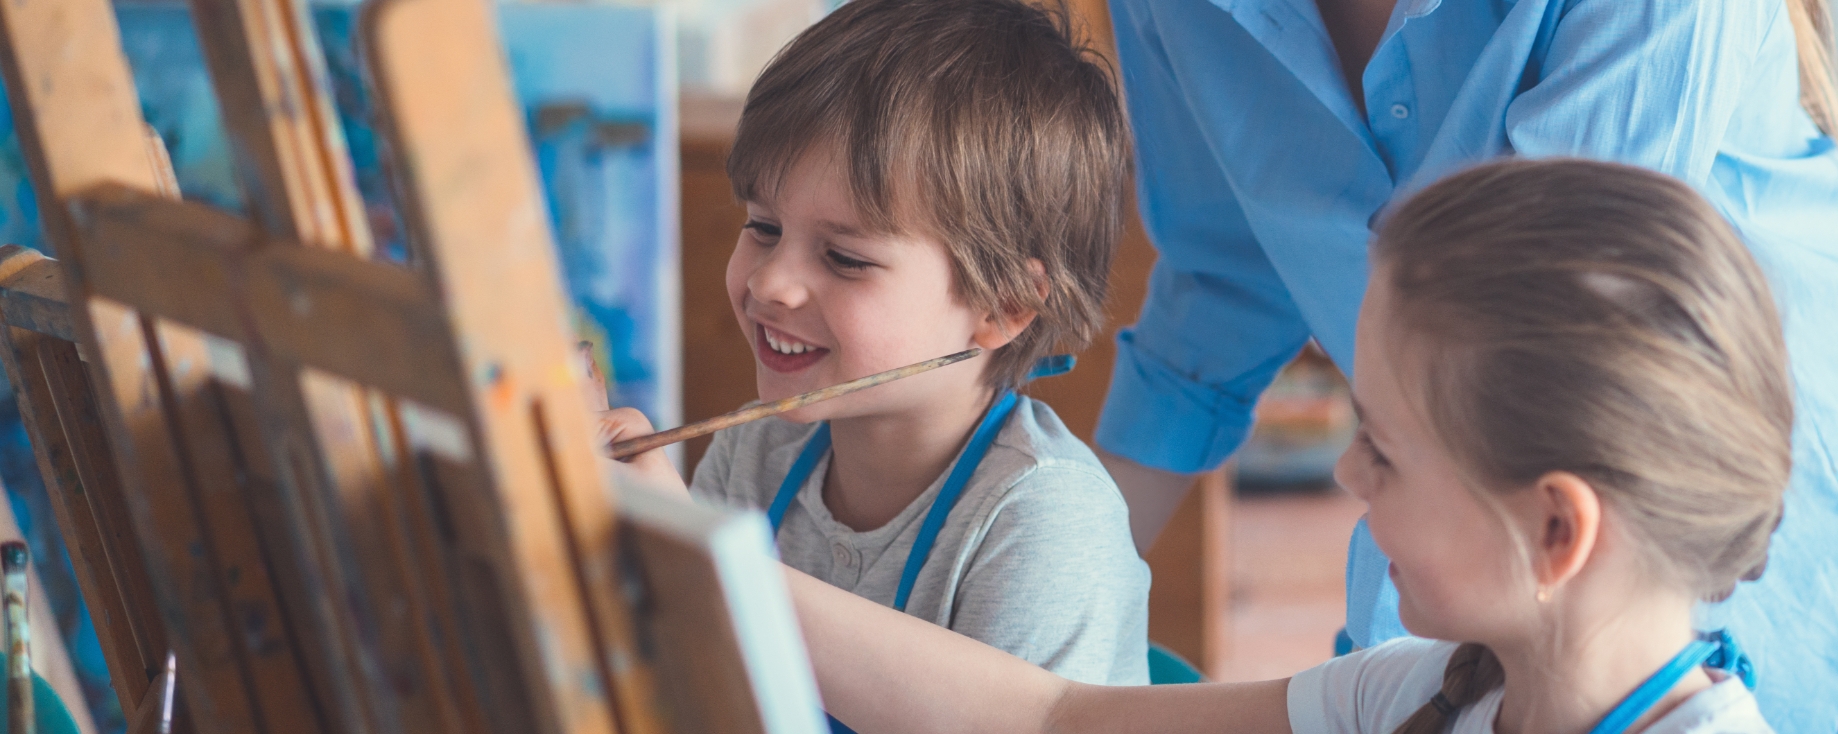 Tønsberg Montessoriskole har ledige lærerstillinger